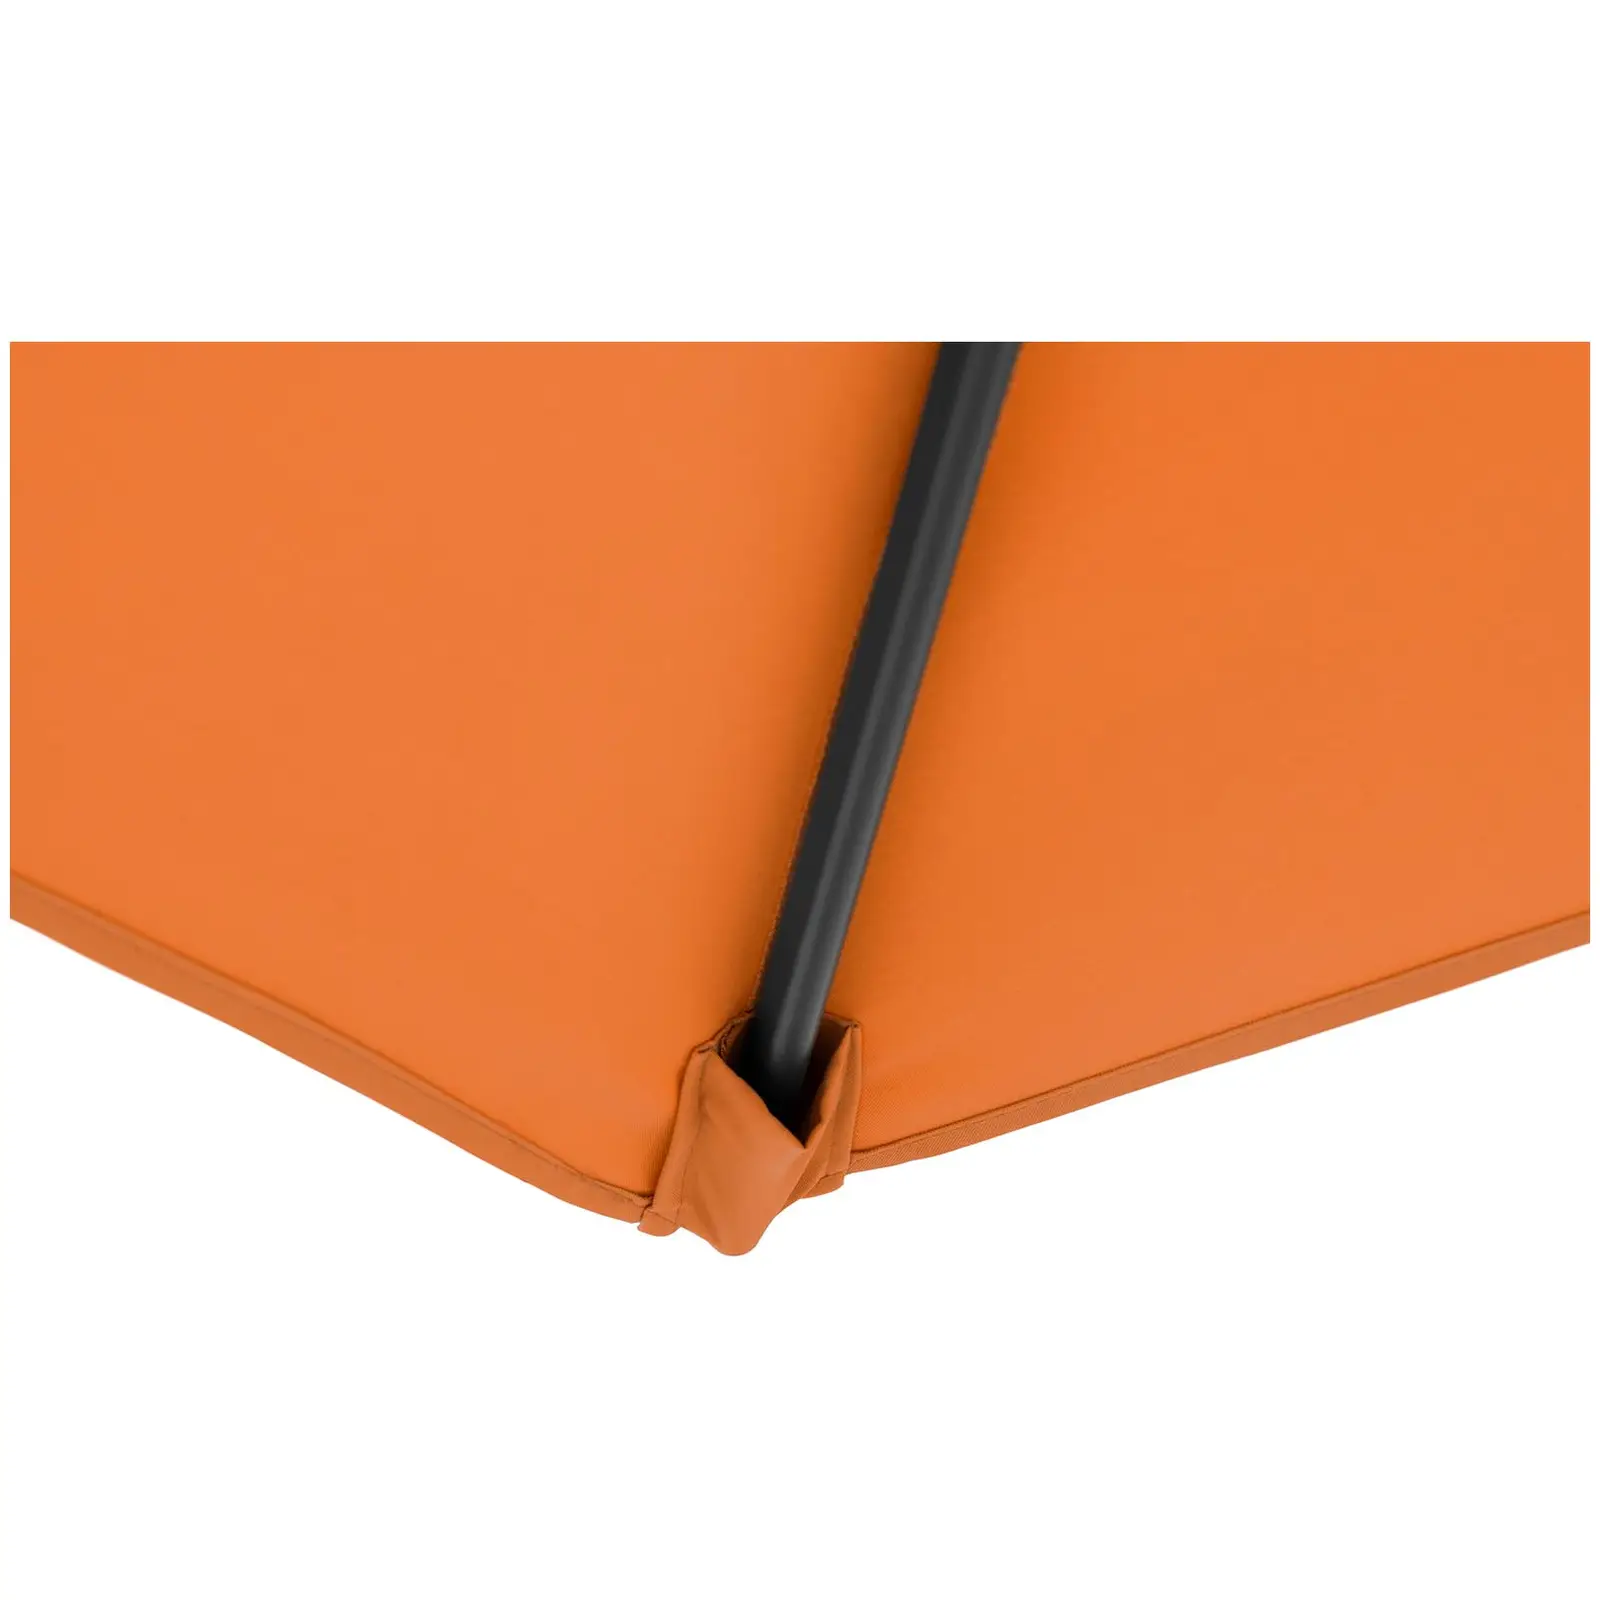 Ampelschirm - Orange - rund - Ø 300 cm - neig- und drehbar - 9